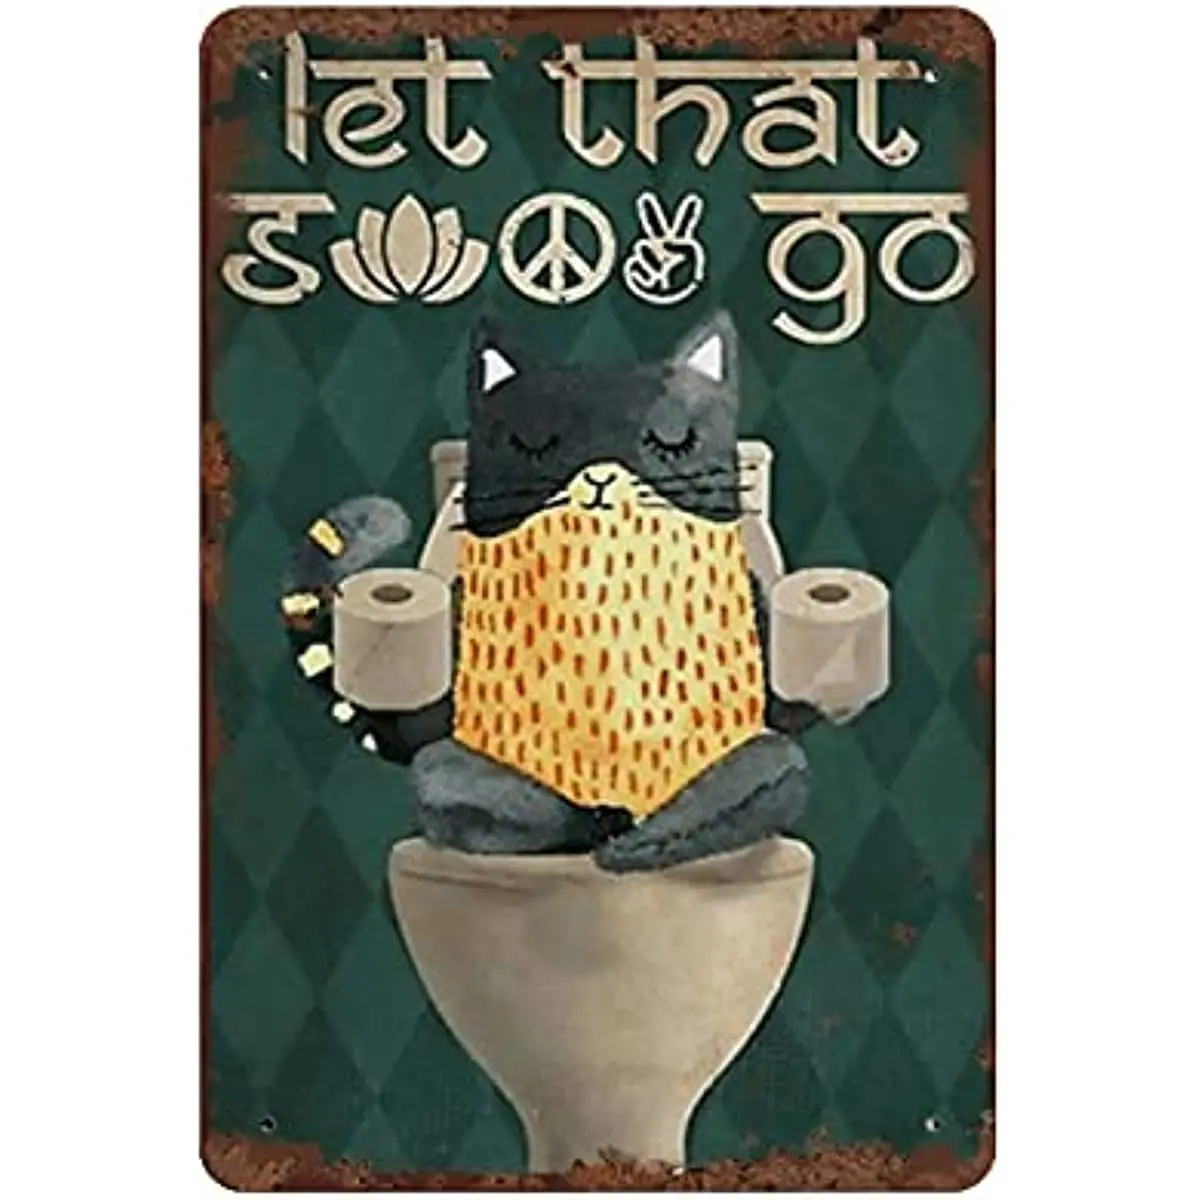 

Let Go, кот влюбленные металлический жестяной логотип для ванной комнаты забавное украшение для туалета винтажная мужская пещера бар клуб